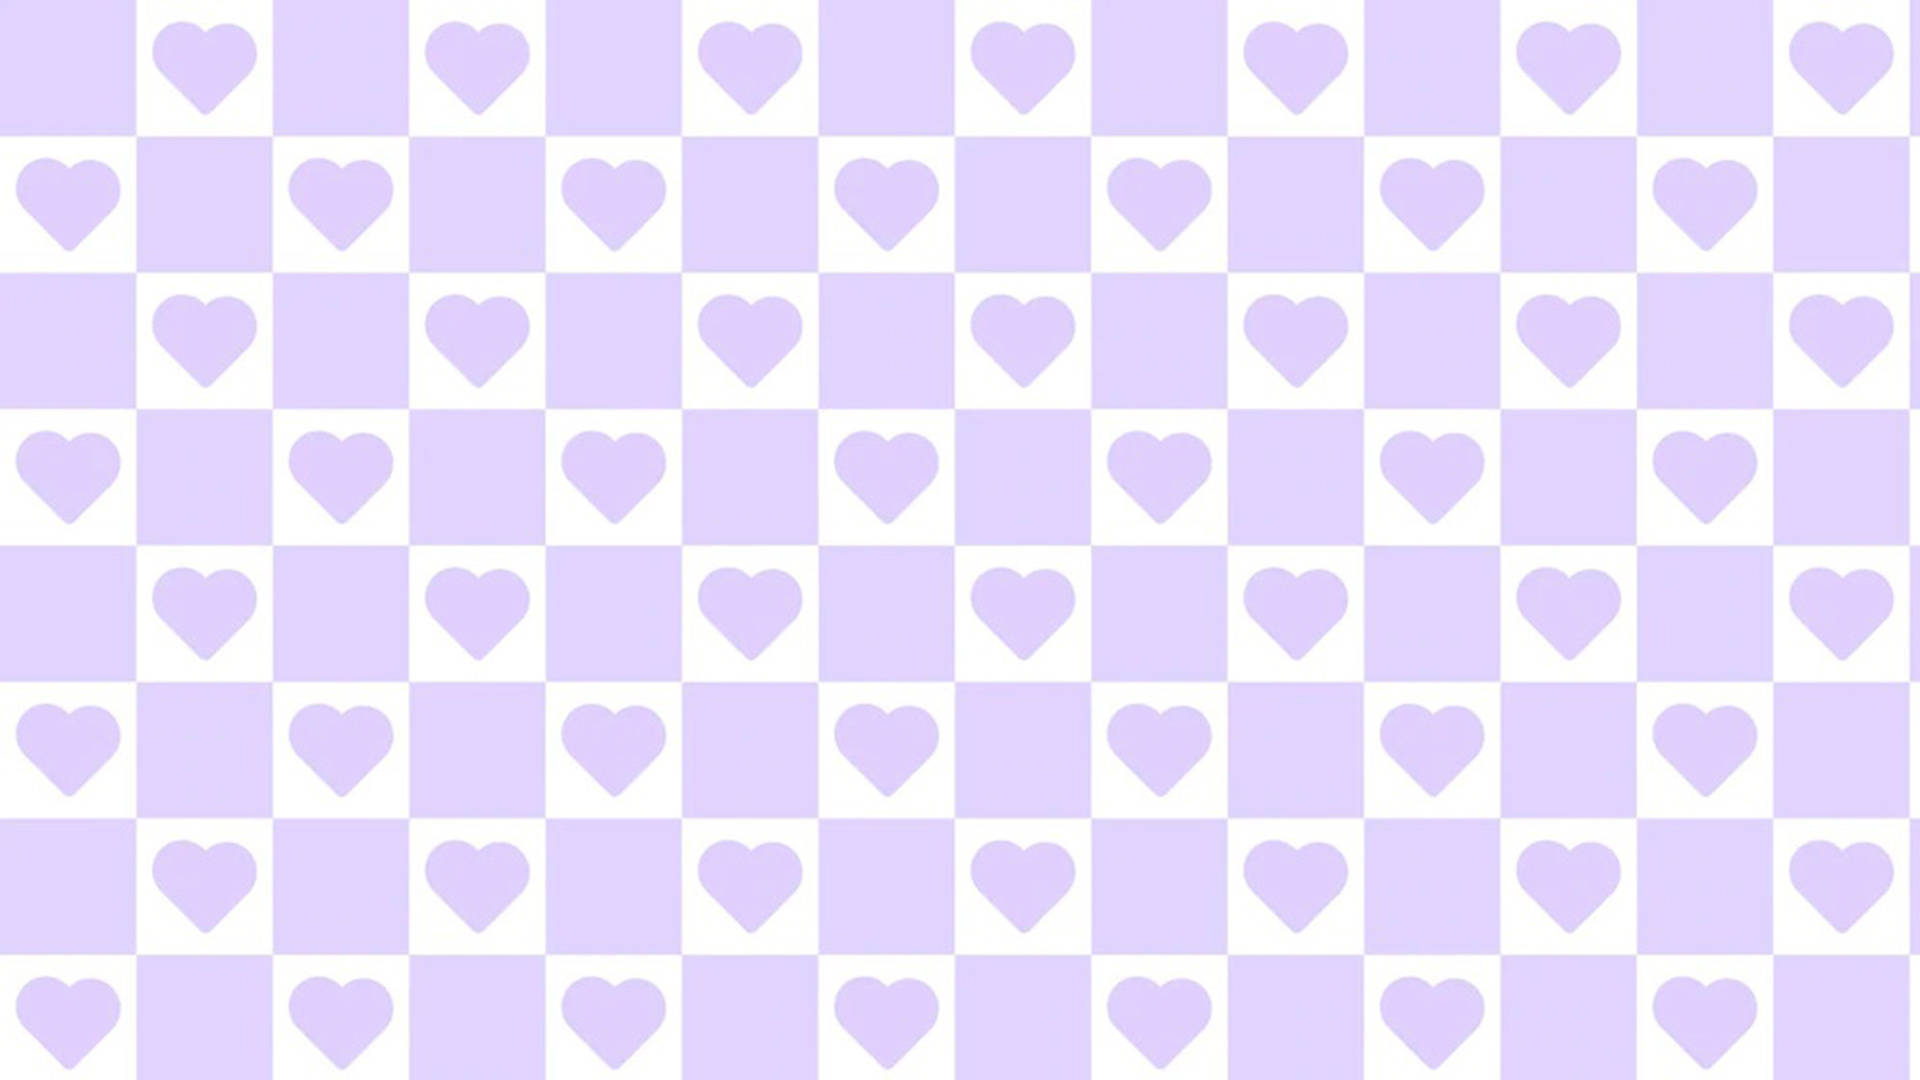 Checkers Hearts Wallpaper là mẫu hình nền độc đáo và lãng mạn. Nếu bạn muốn tạo điểm nhấn cho màn hình điện thoại của mình, hãy ghé thăm trang web của chúng tôi và tải xuống hình nền đầy nữa cảm xúc này.